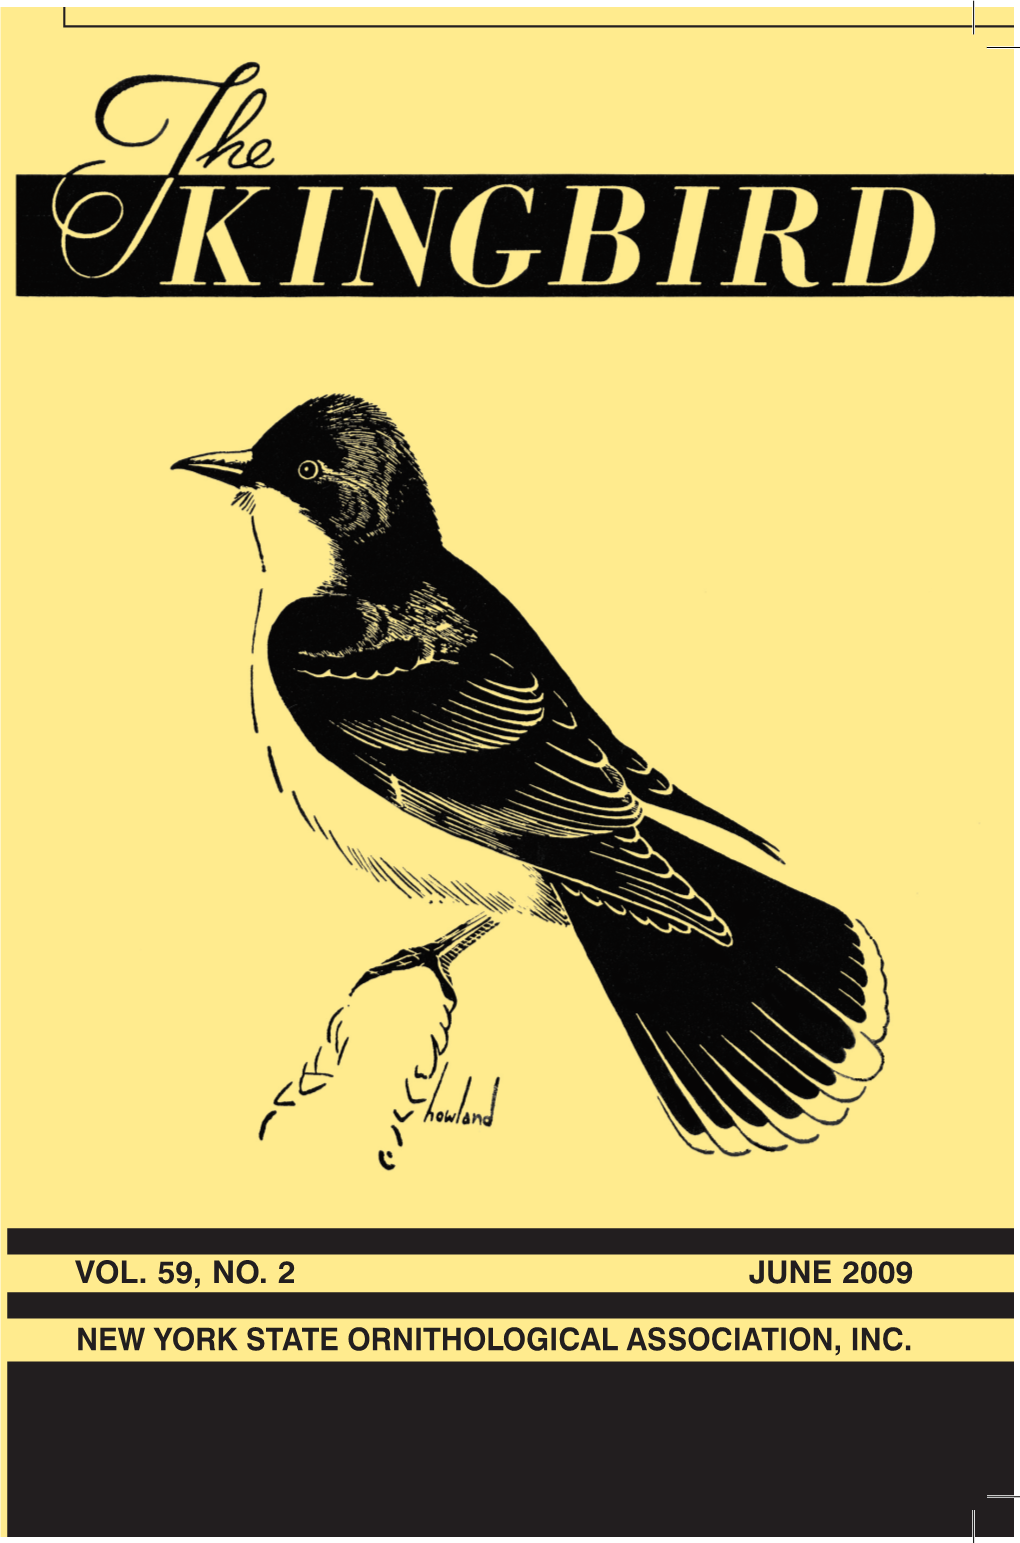 The Kingbird Vol. 59 No. 2